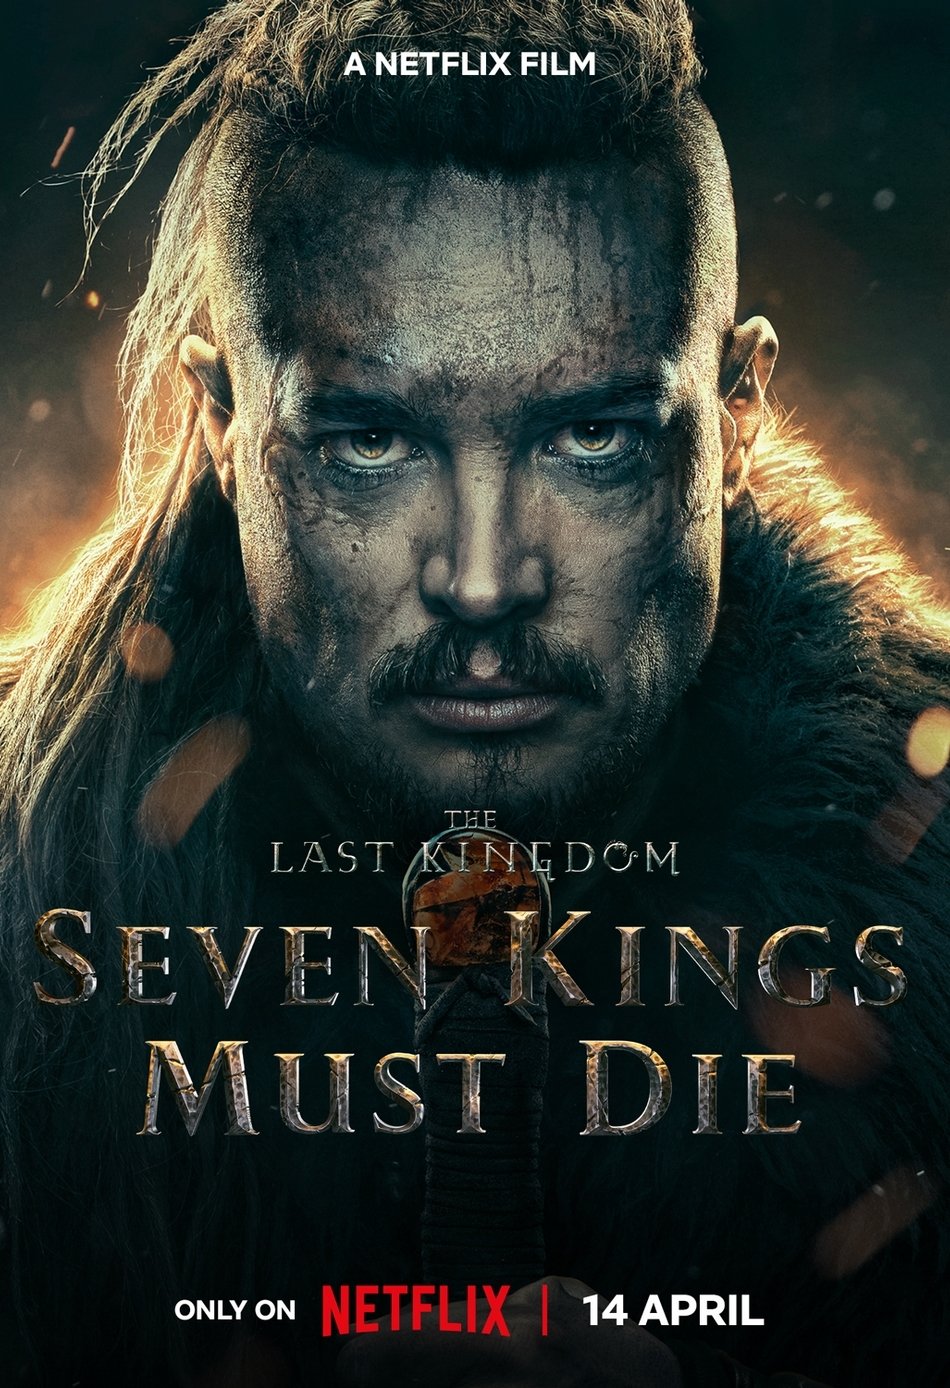 The Last Kingdom- Seven Kings Must Die